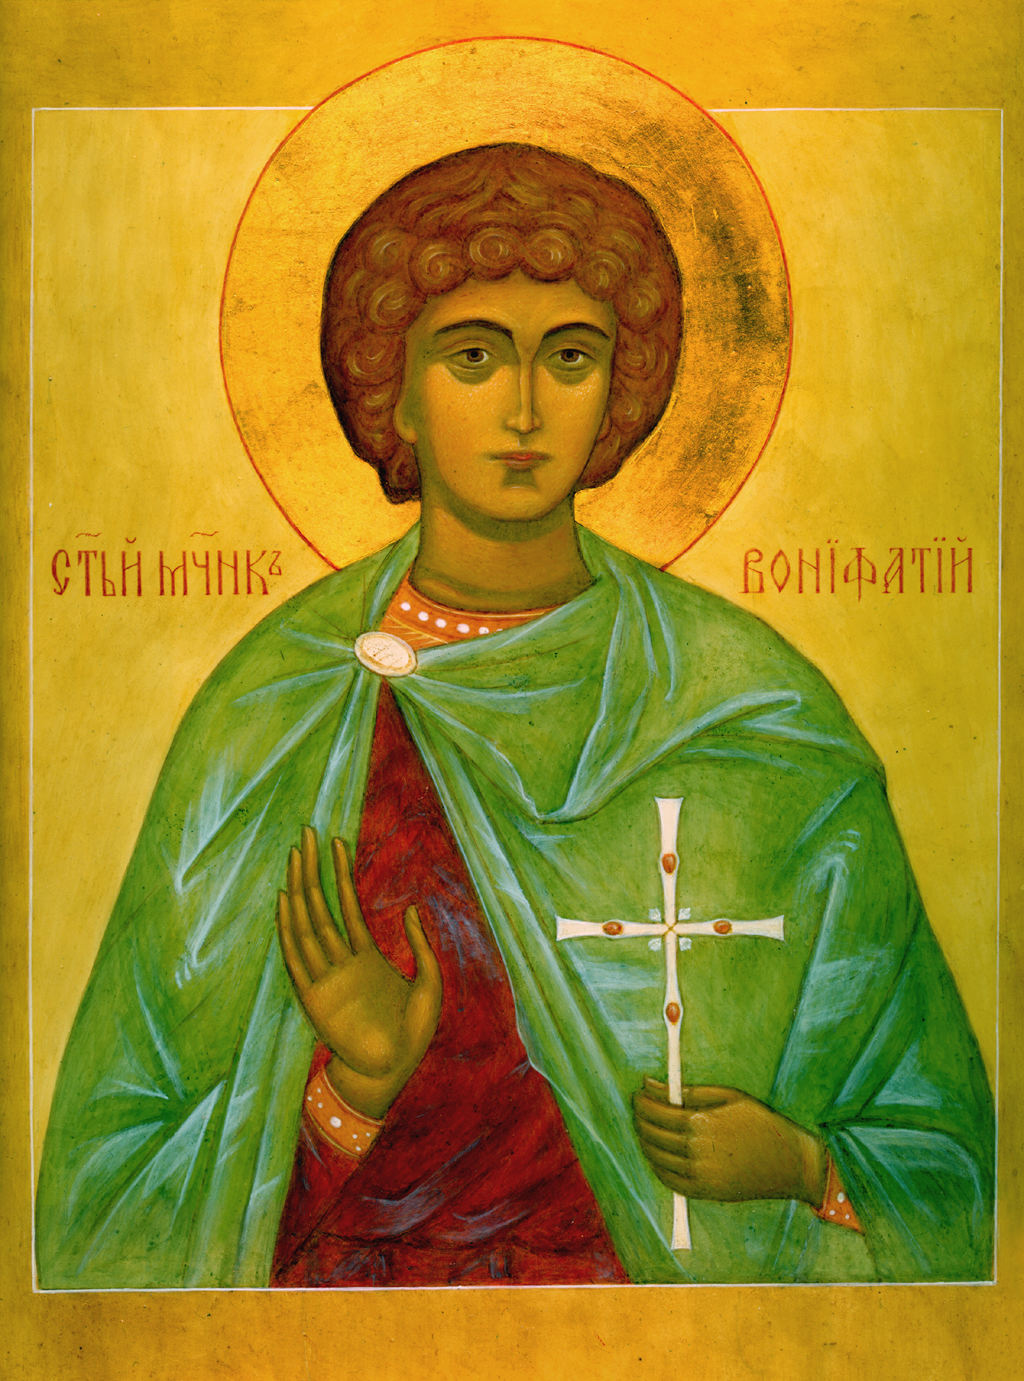 Святой мученик Внифантий | КУЛЬТУРНЫЙ ЛАНДШАФТ